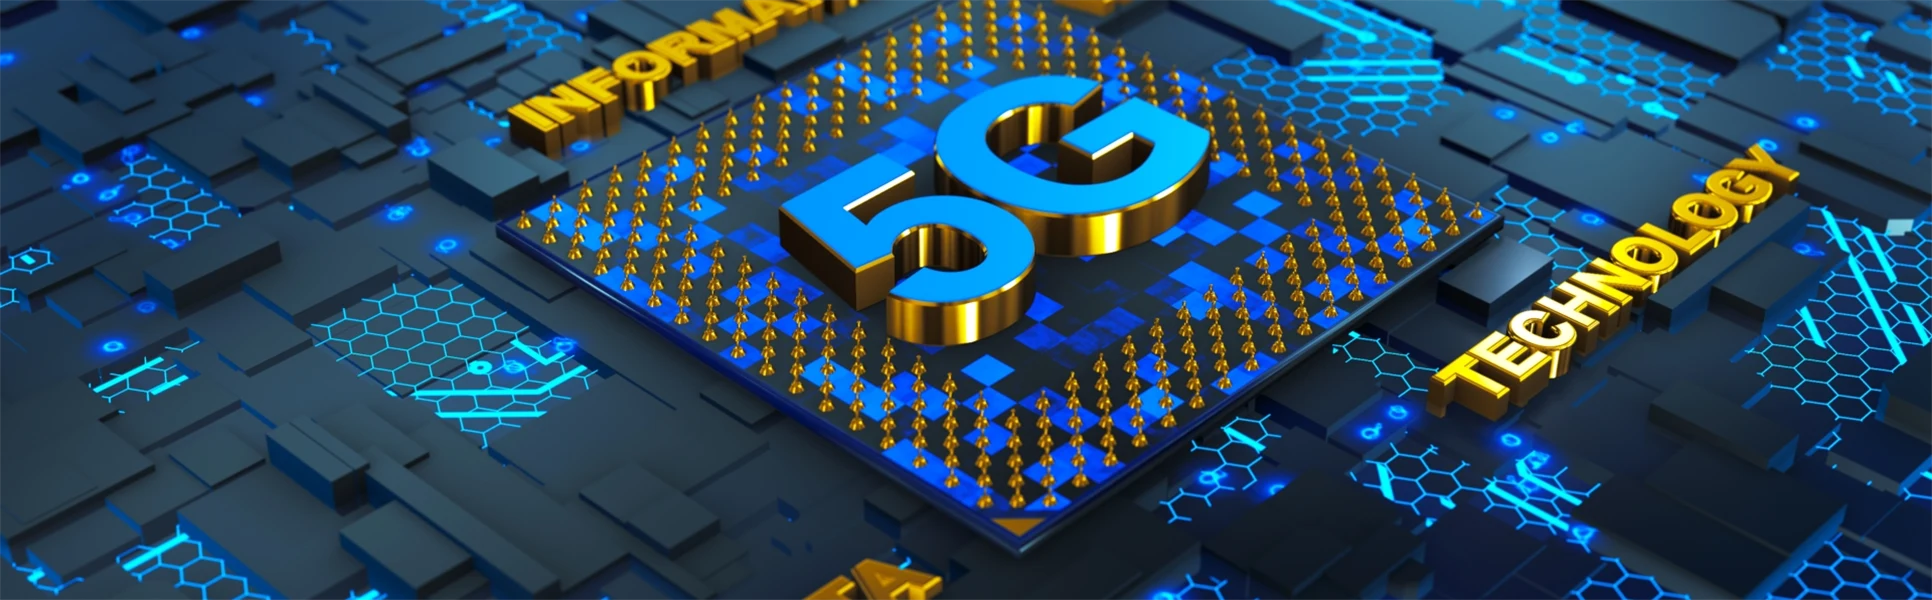 Konceptuell sammansättning av nätverksprocessor med 5G-logotyp på kretskort. 3d rendering.